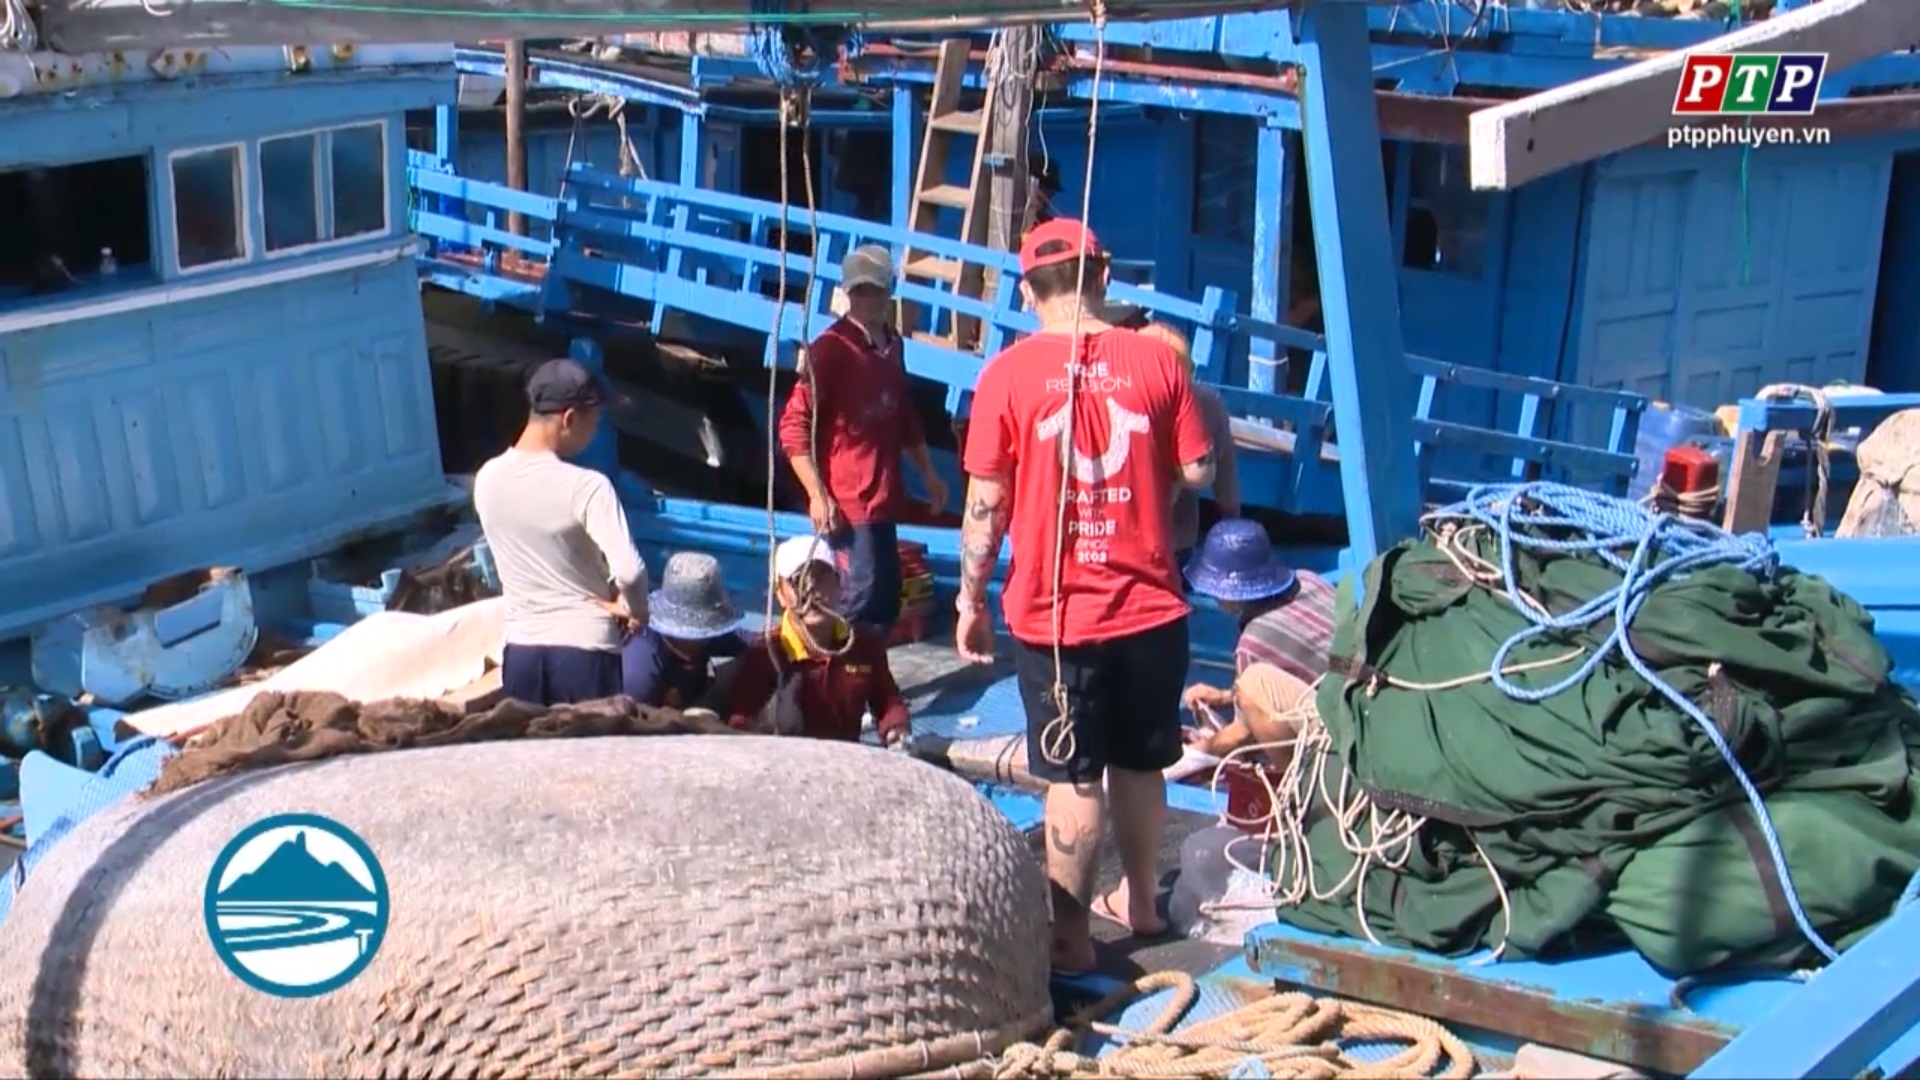 Phú Yên tích cực khắc phục khai thác hải sản bất hợp pháp trên biển